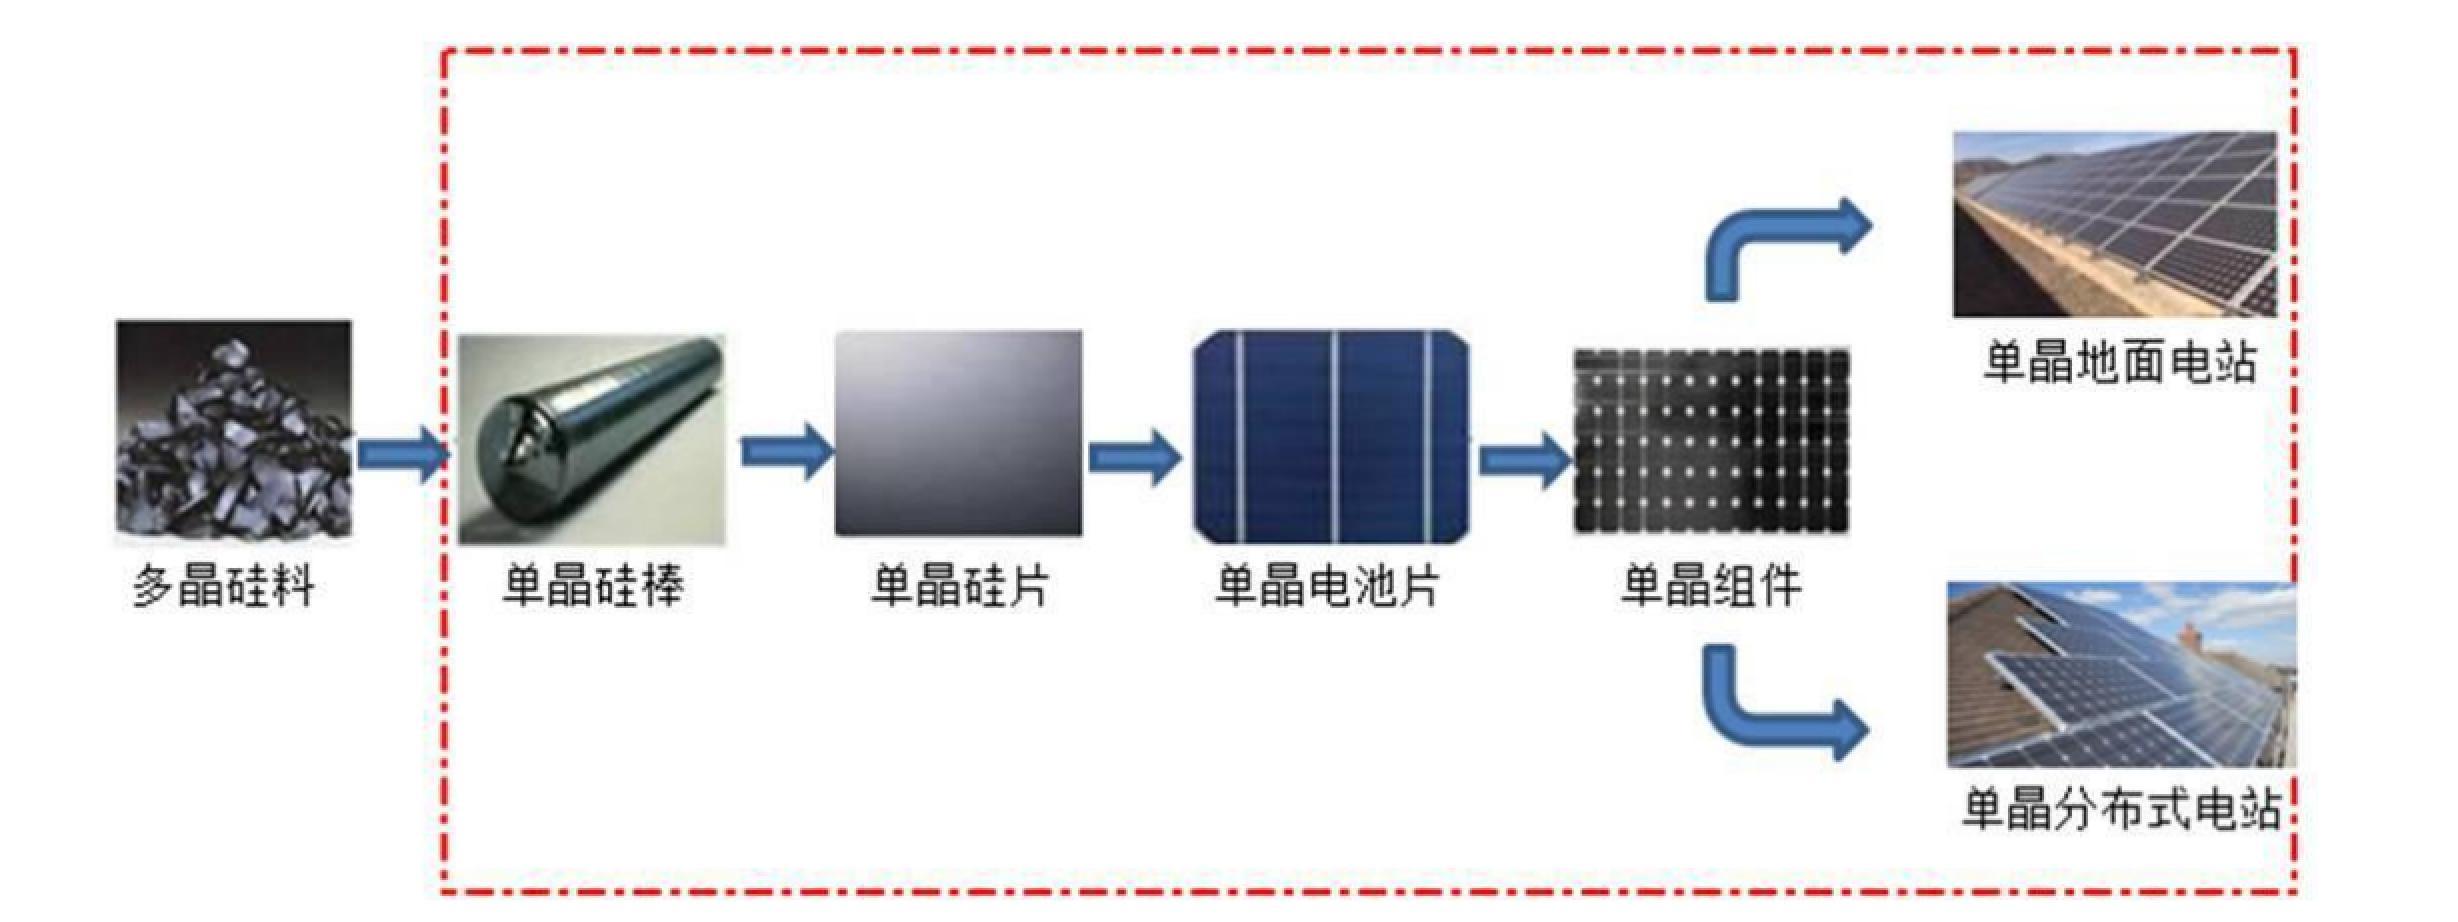 硅片硅棒硅料回收_新太阳能硅片产能_硅锭与硅片产能